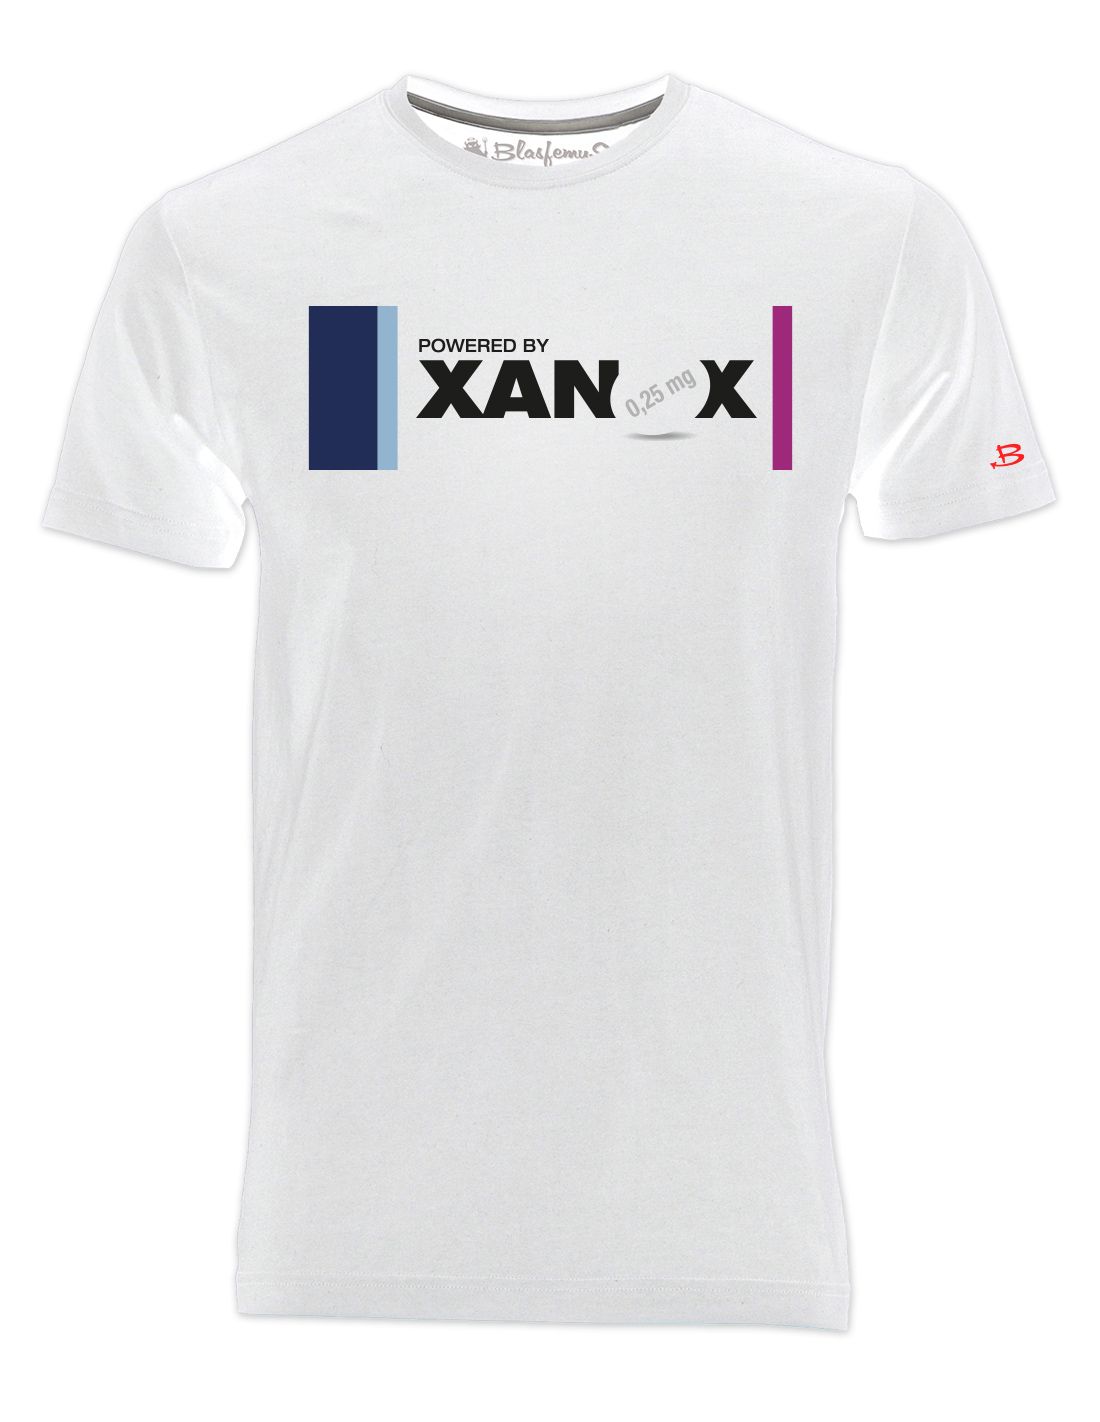 T-Shirt Uomo scritta powered by xanax - Blasfemus Colore Bianco Taglia M